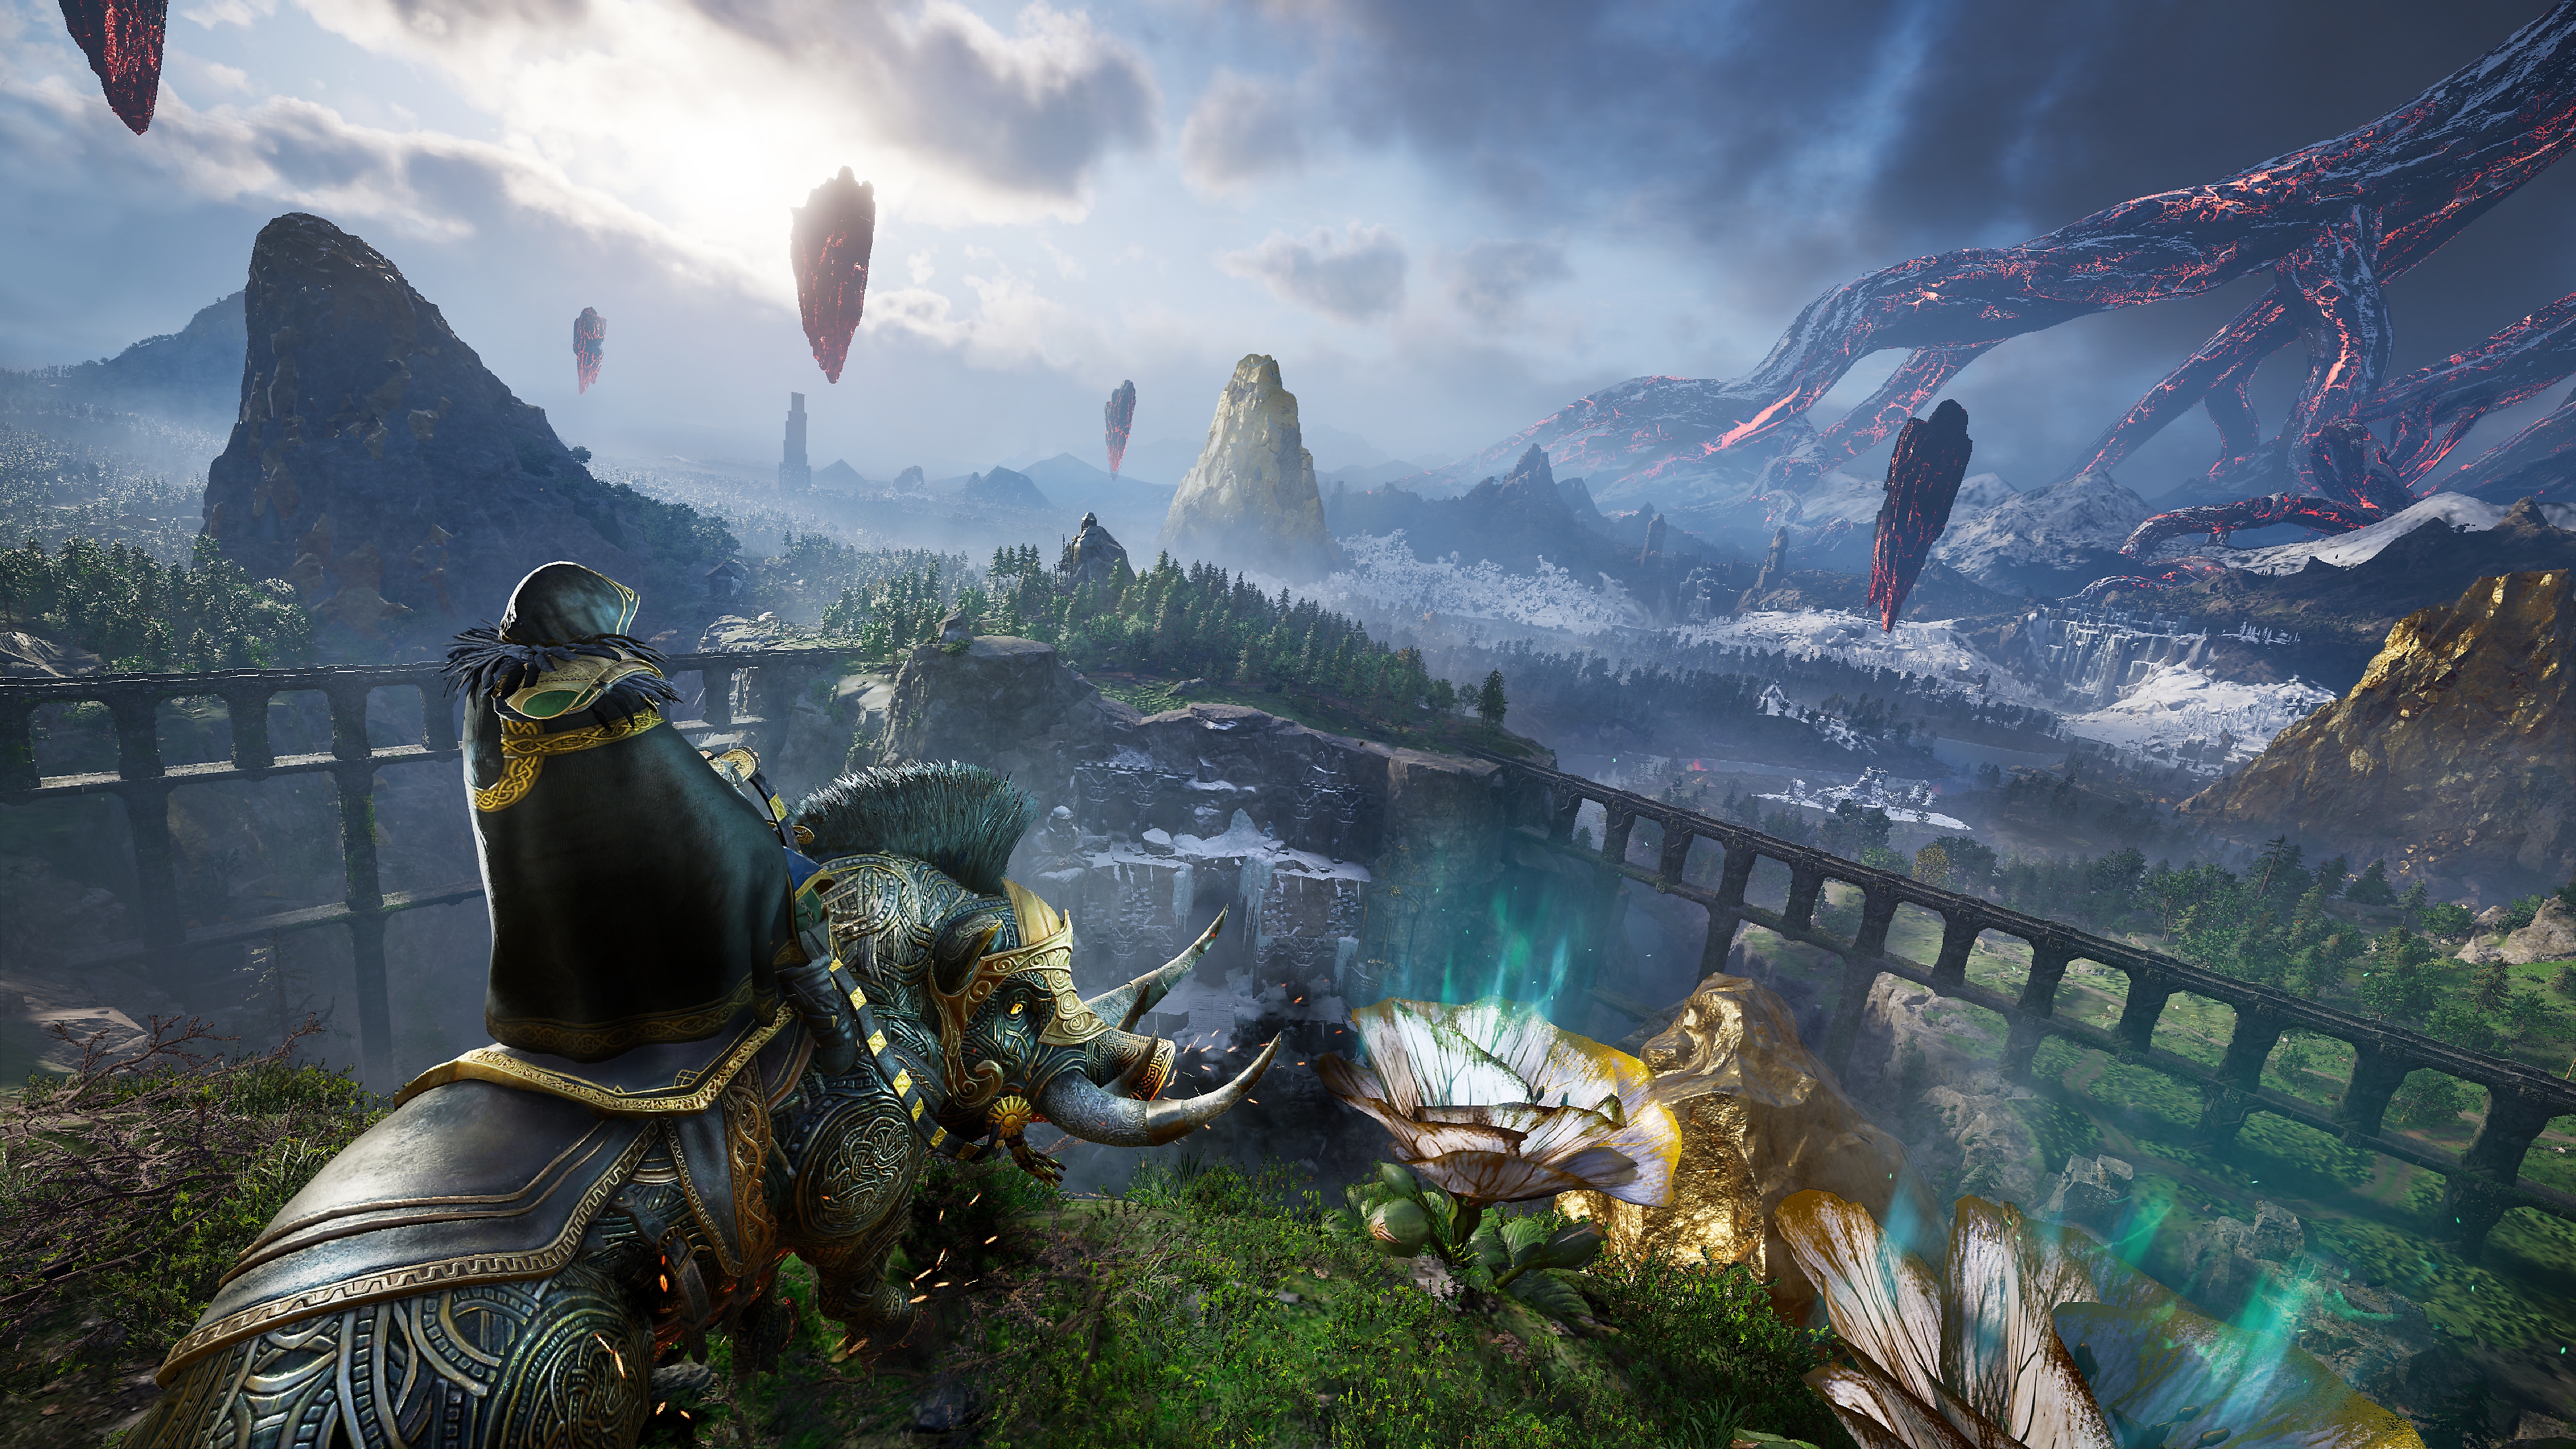 Assassin's Creed Valhalla Dawn of Ragnarok - skærmbillede, der viser hovedpersonen siddende på en vildsvineagtig ganger i et dramatisk landskab